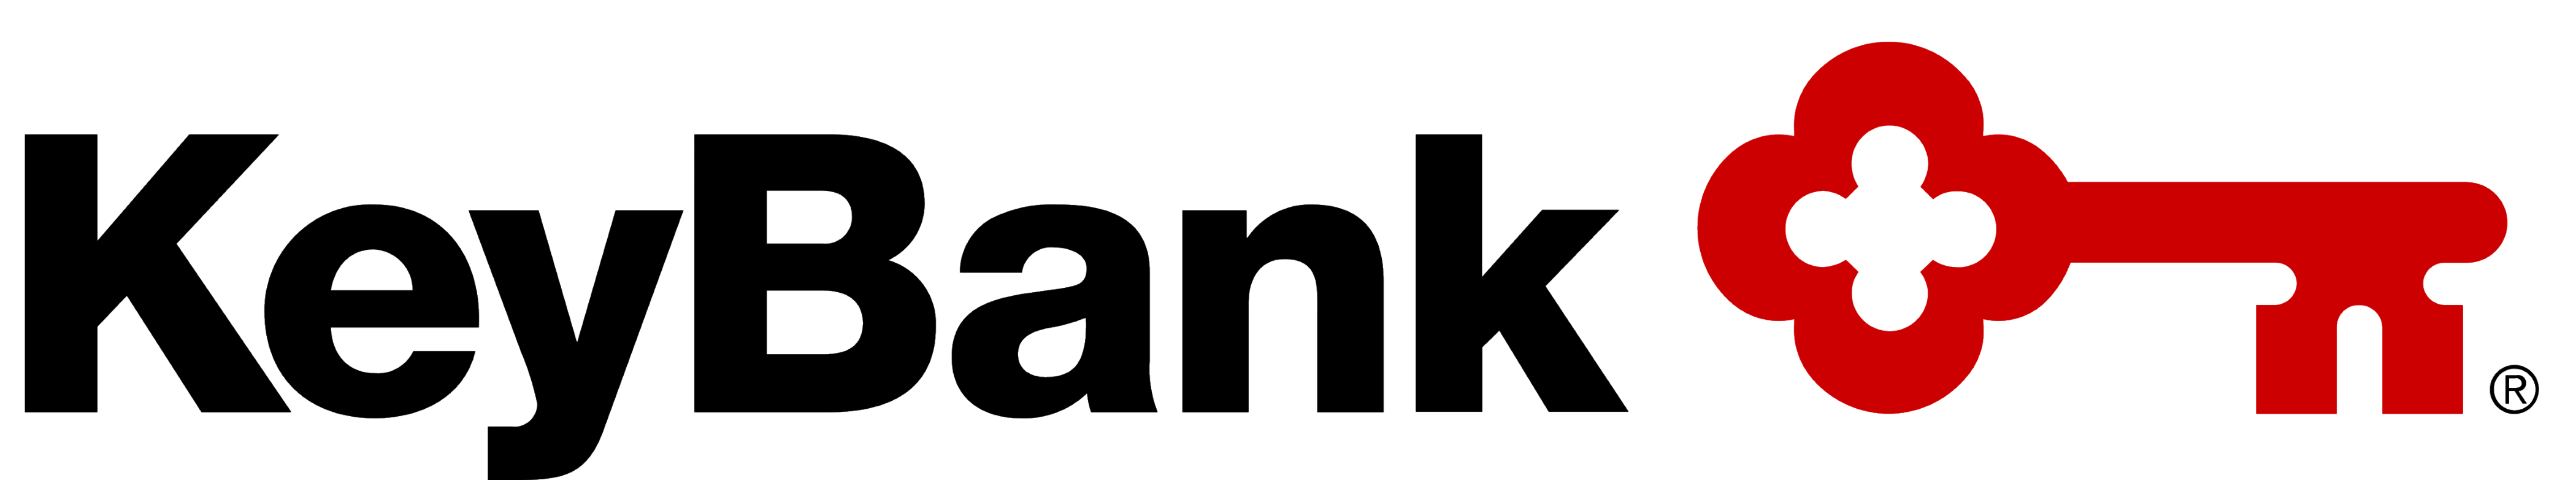 KeyBank logo, logotype